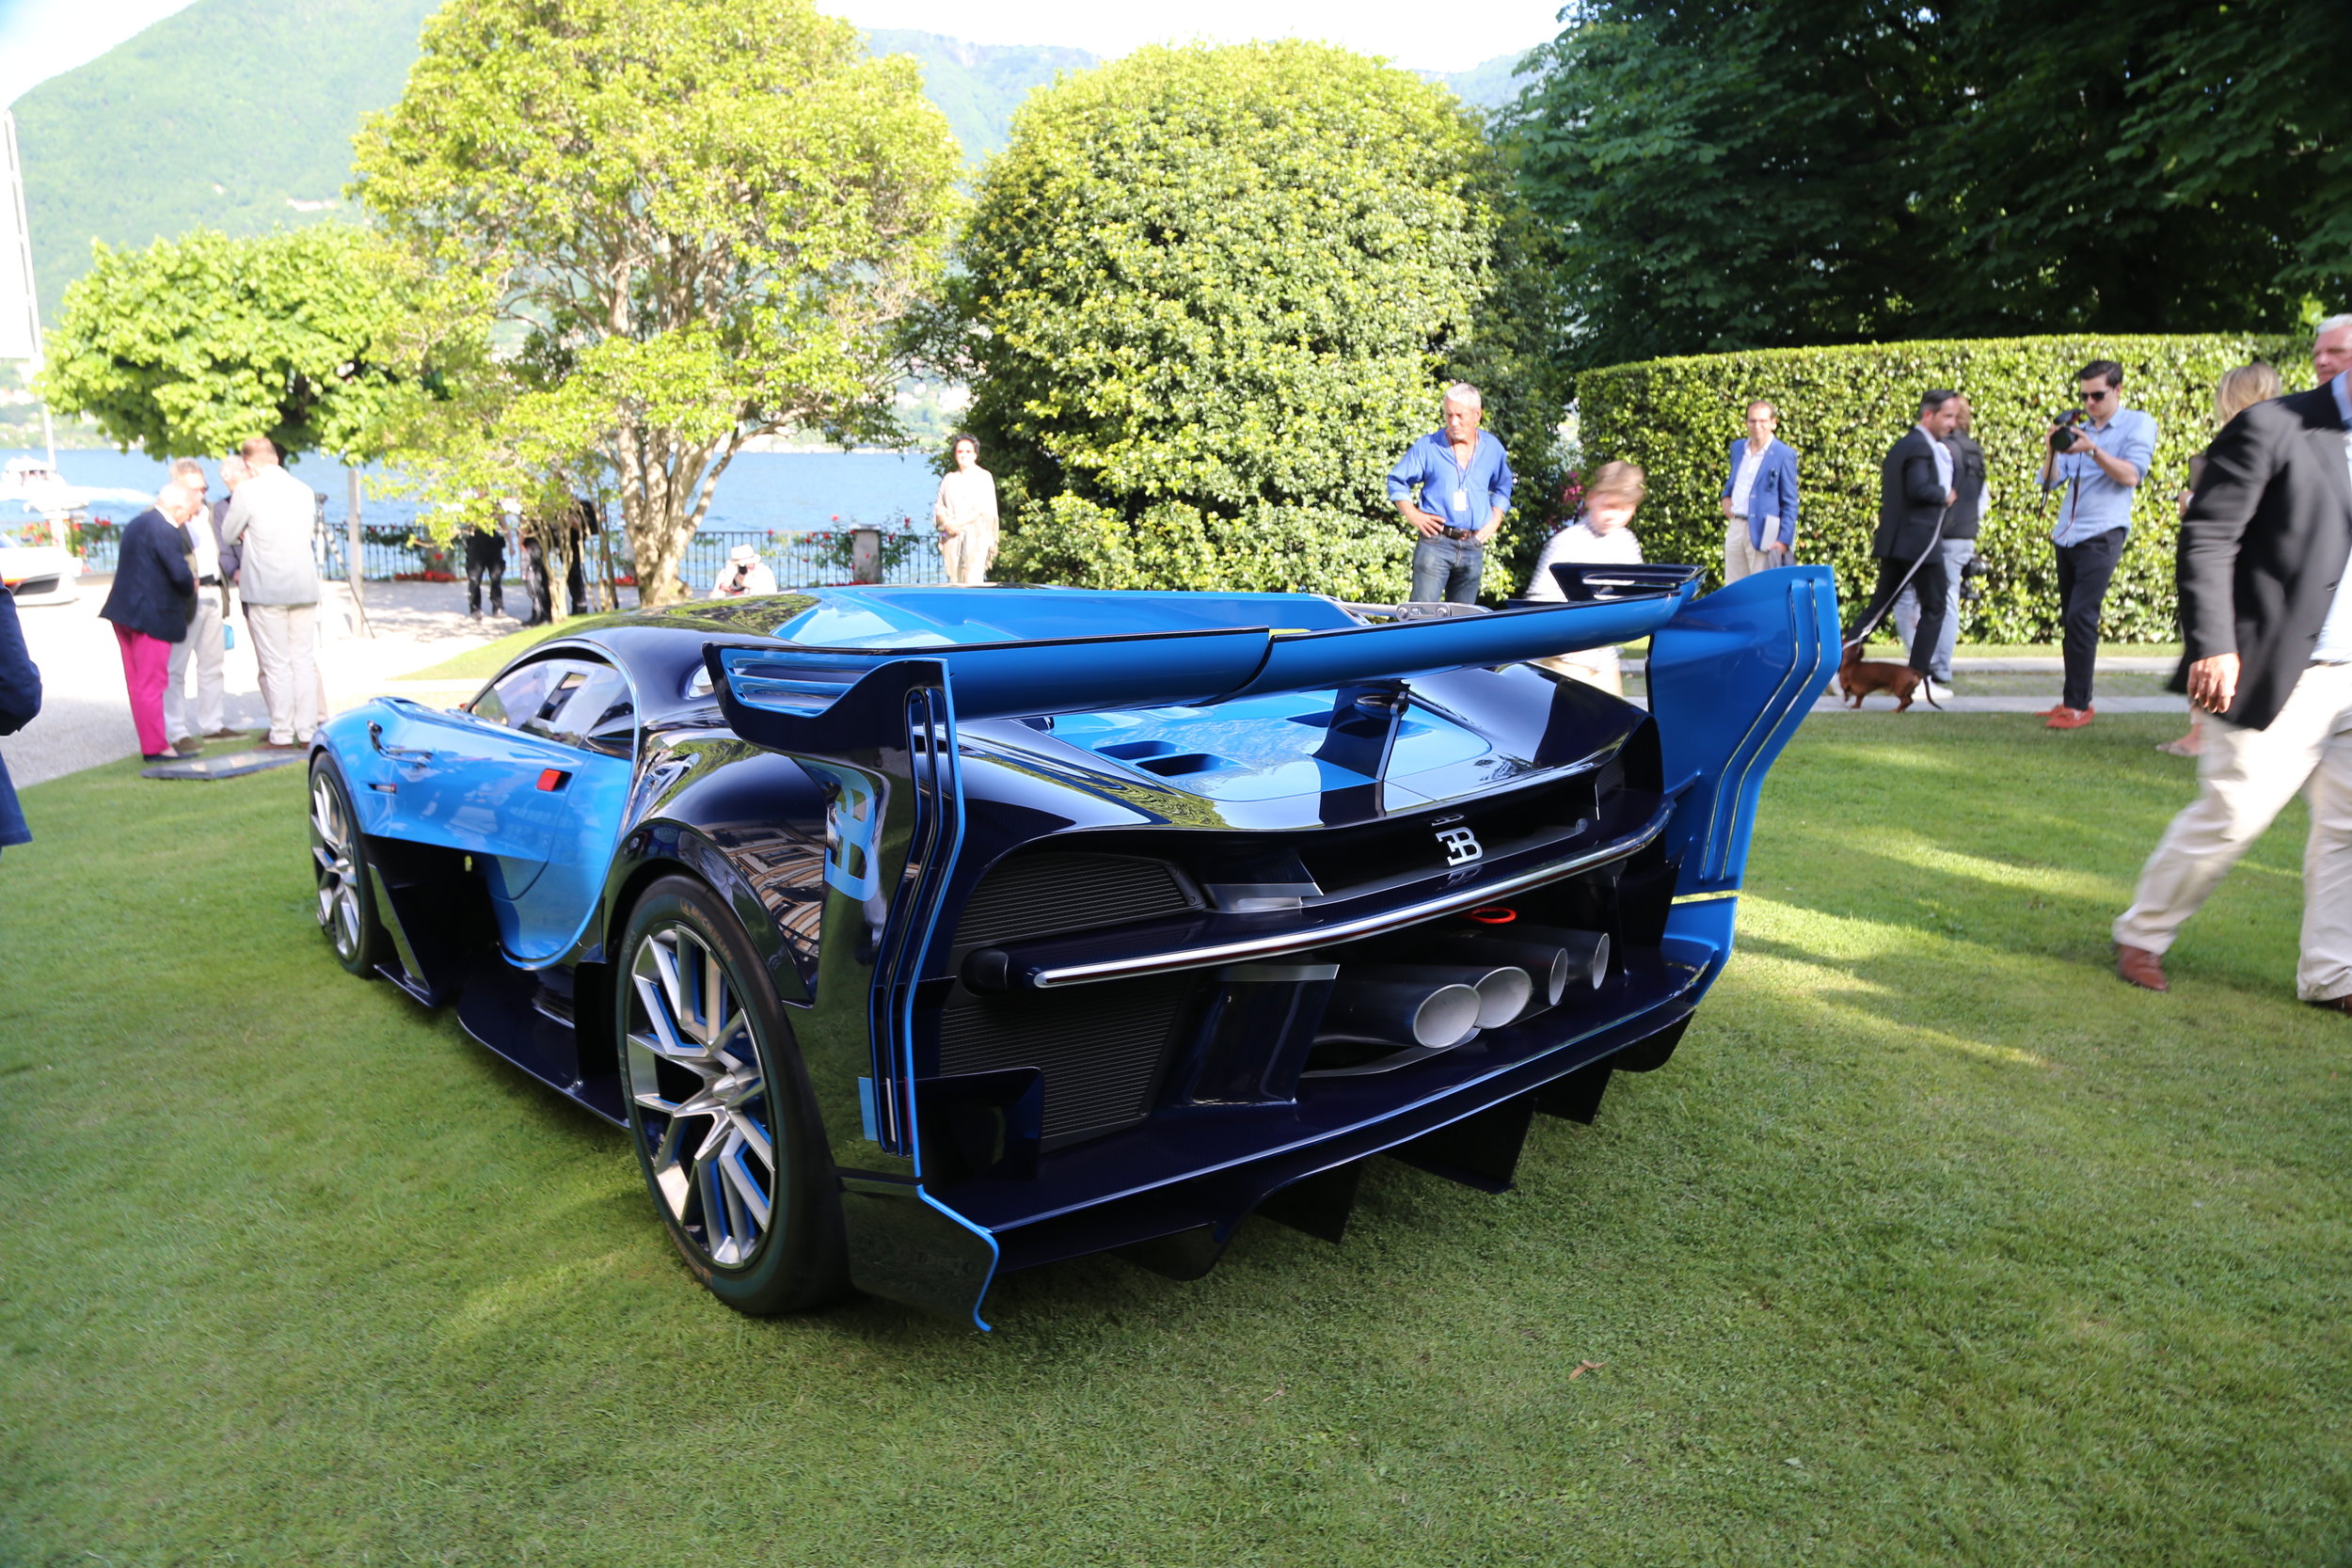 Gran — Turismo Bugatti Darragh Macchina Vission